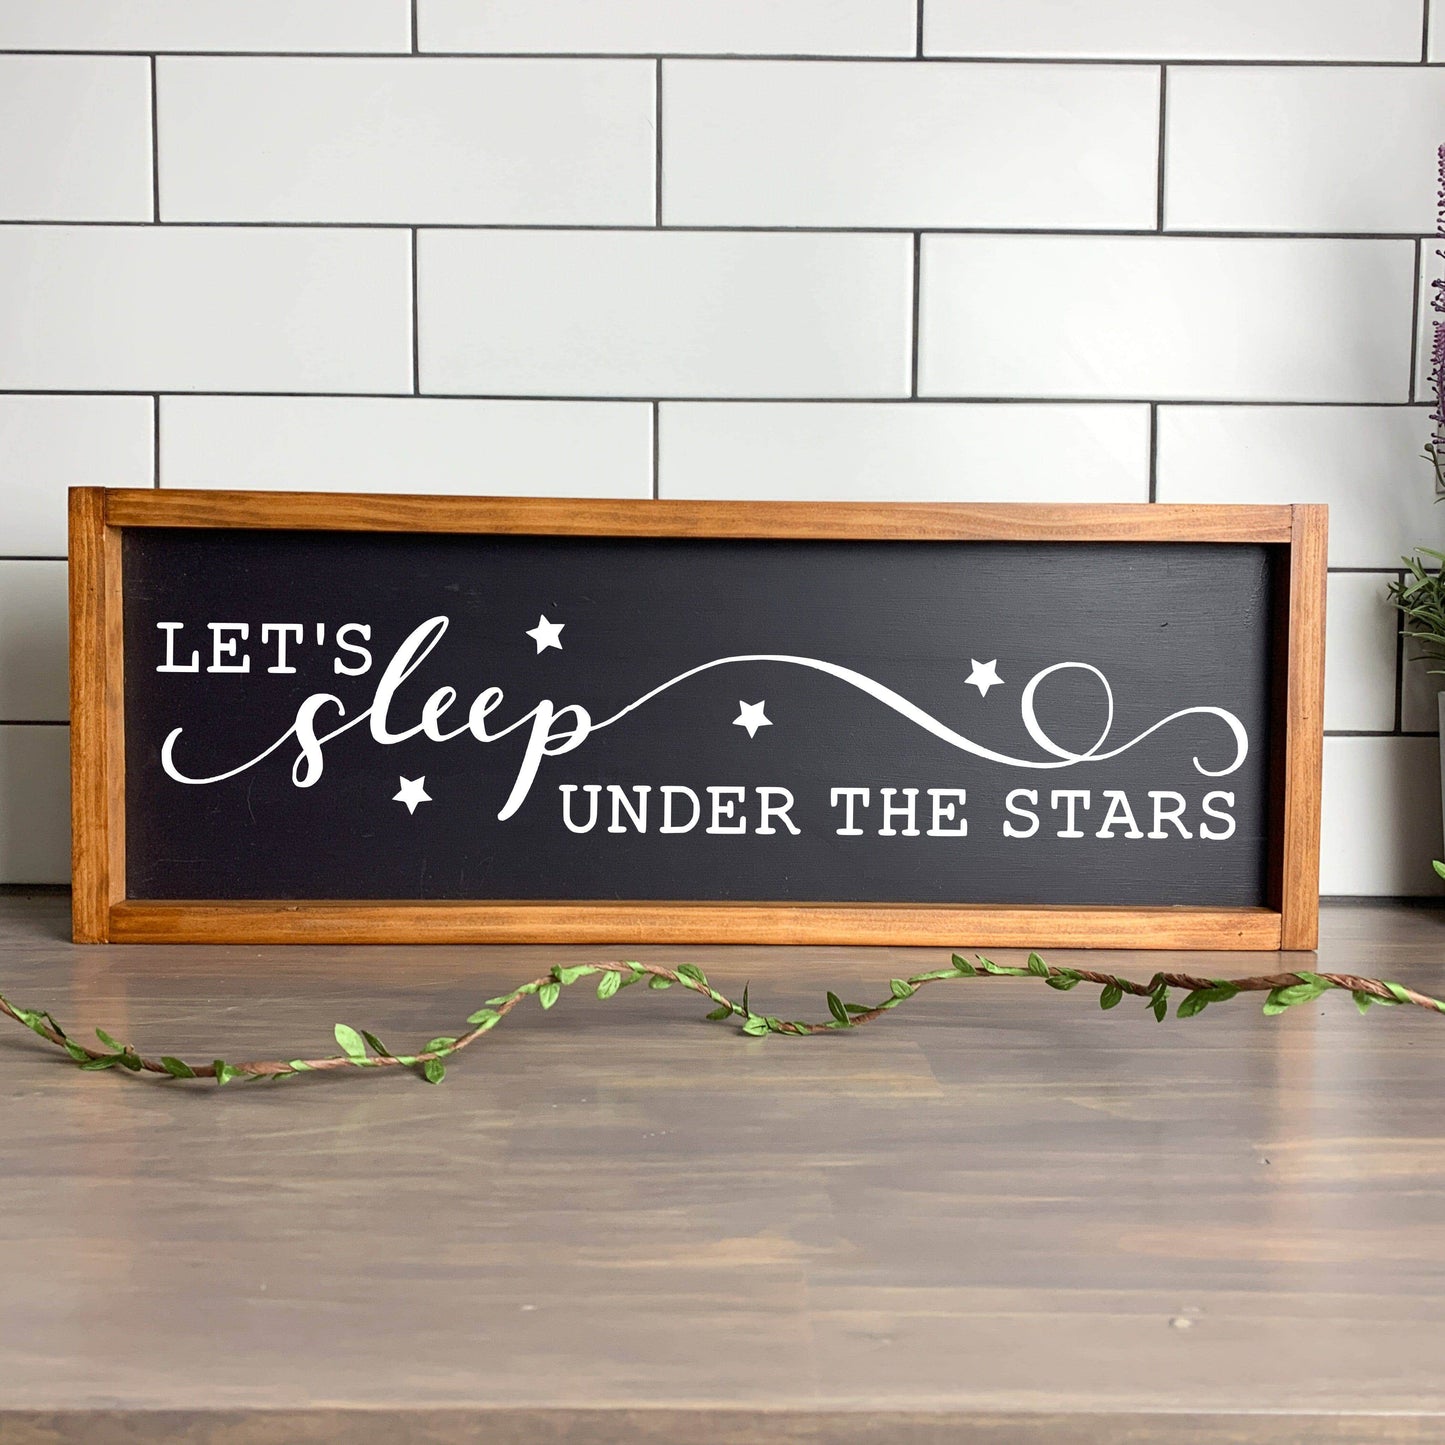 Lets sleep under the stars framed wood sign, farmhouse sign, rustic decor, home decor